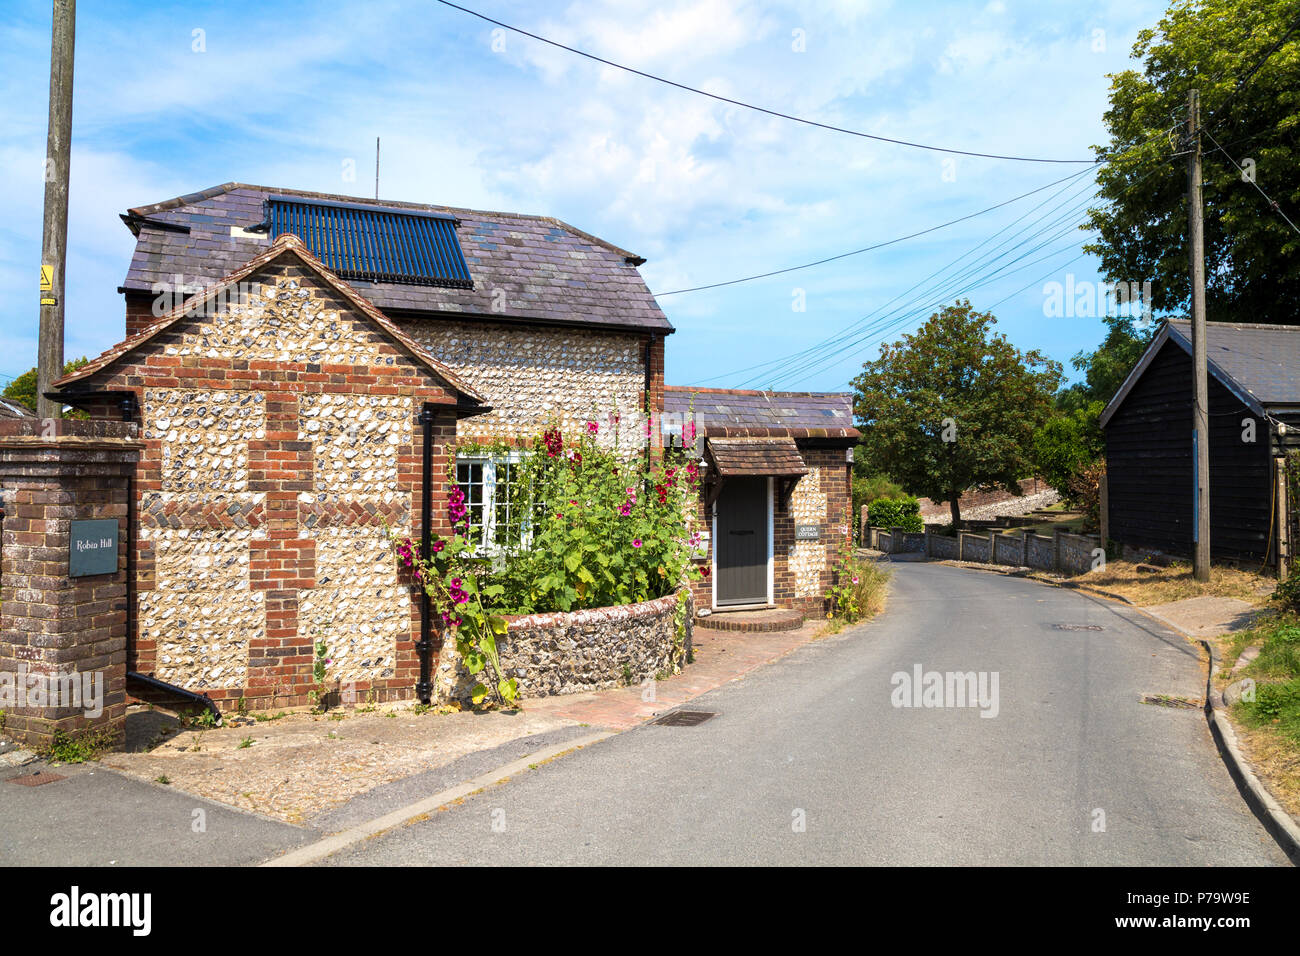 In mattoni e pietra casa inglese in un villaggio nel paesaggio rurale, Rodmell nelle vicinanze del Lewes, England, Regno Unito Foto Stock